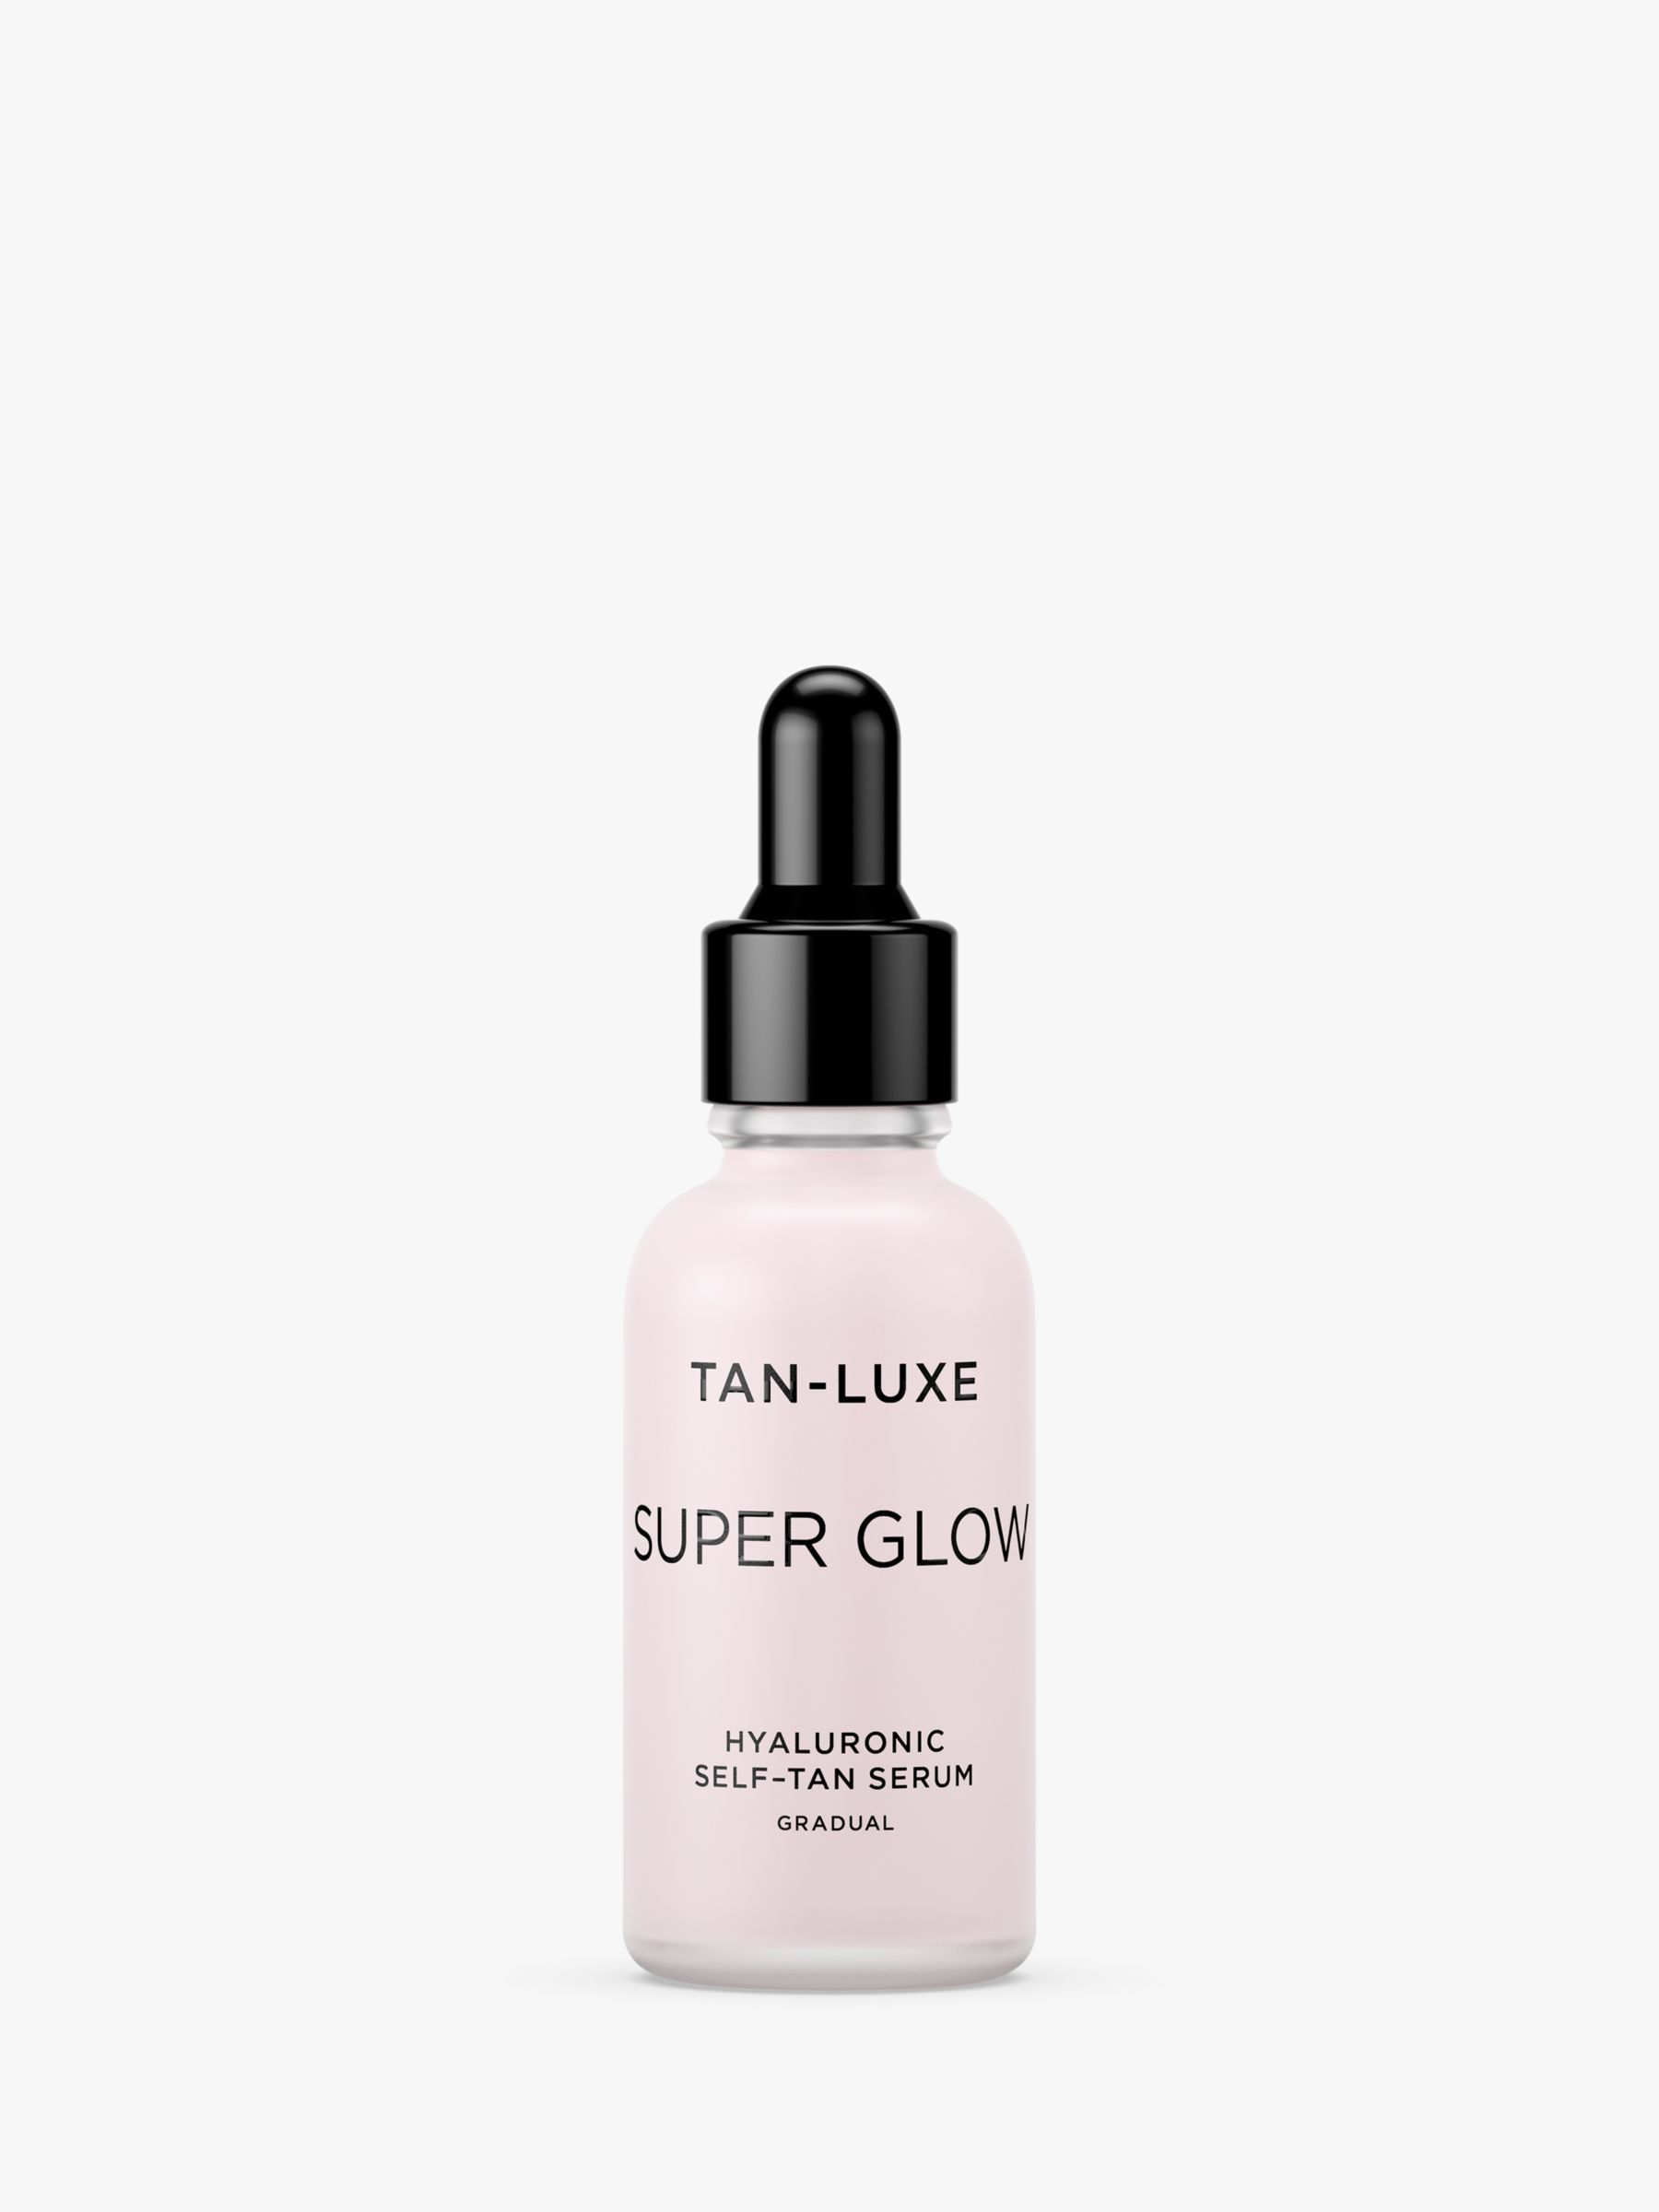 Tan-Luxe Super Glow Hyaluronic Self-Tan Serum, £36